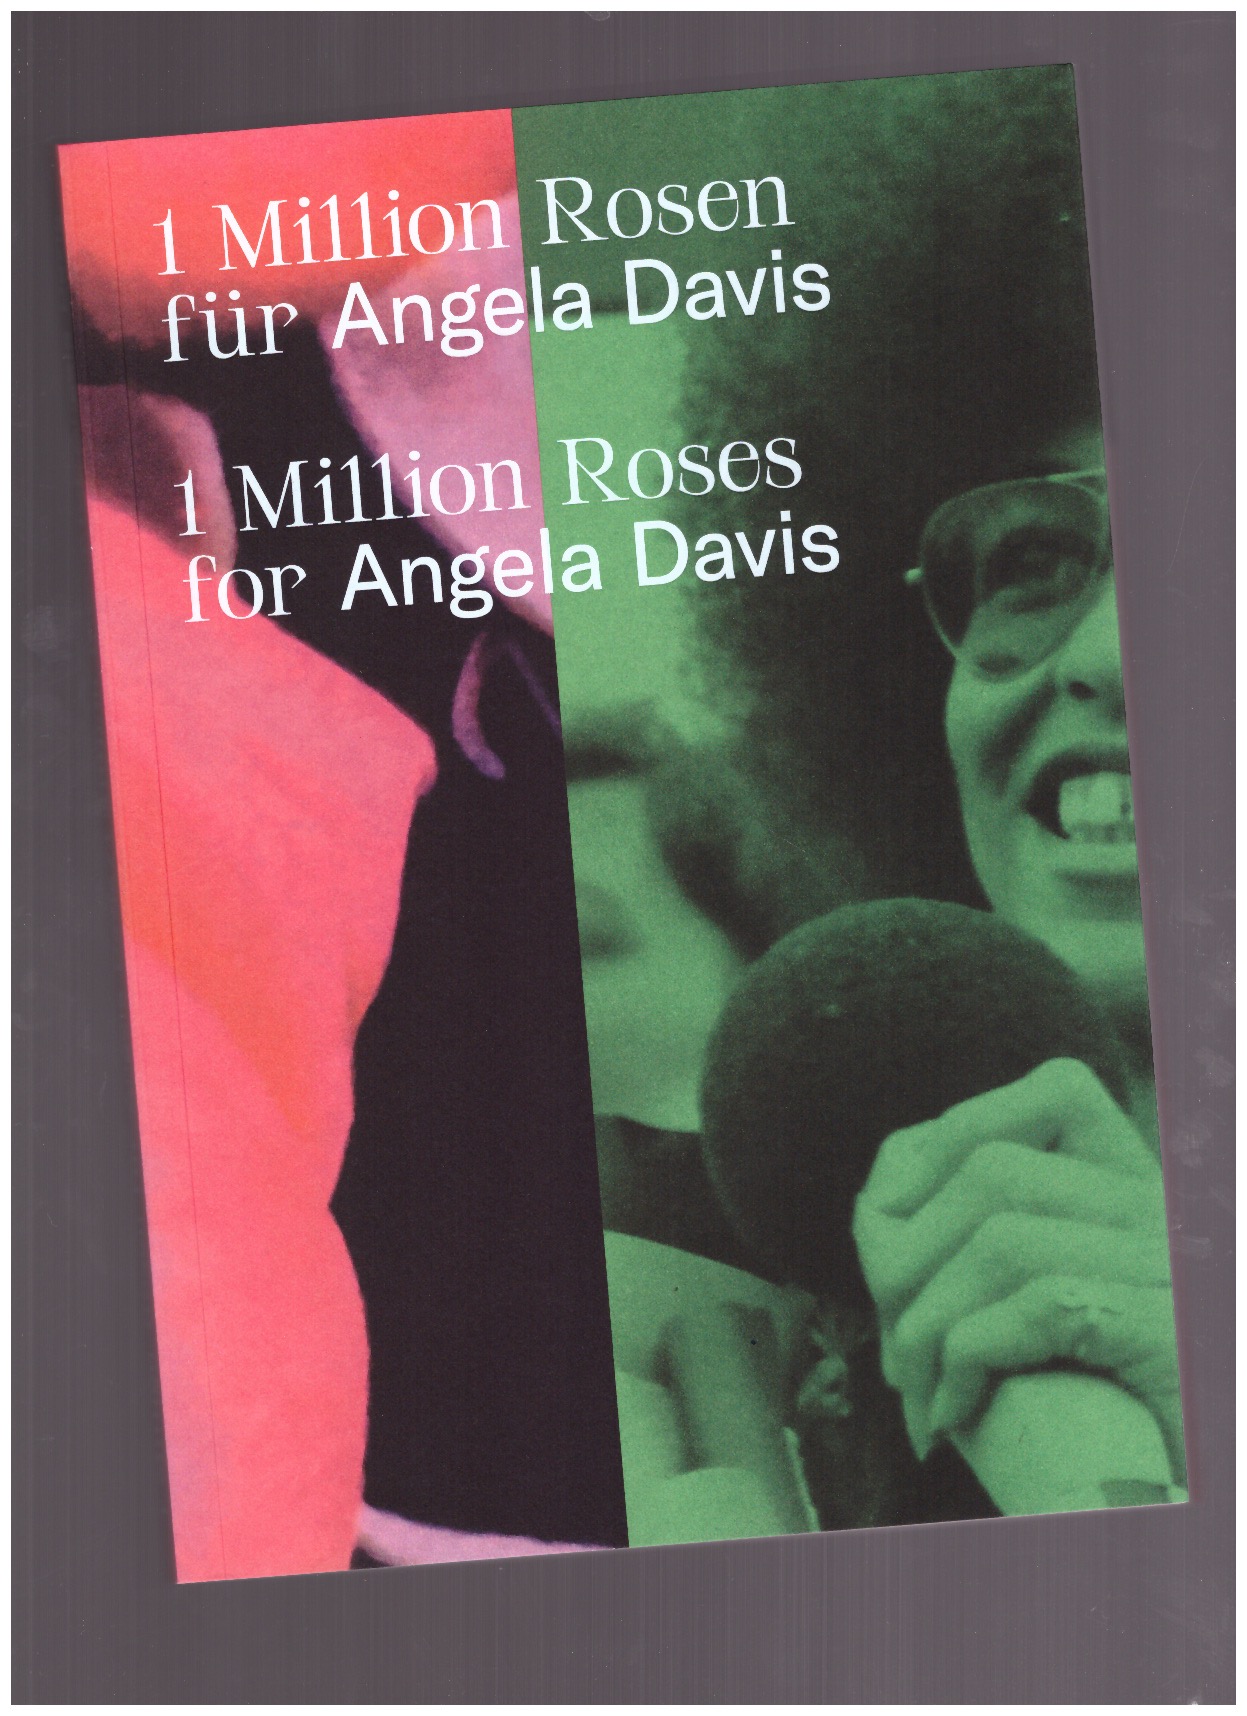 REINHARDT, Kathleen (ed.) - 1 Million Roses for Angela Davis